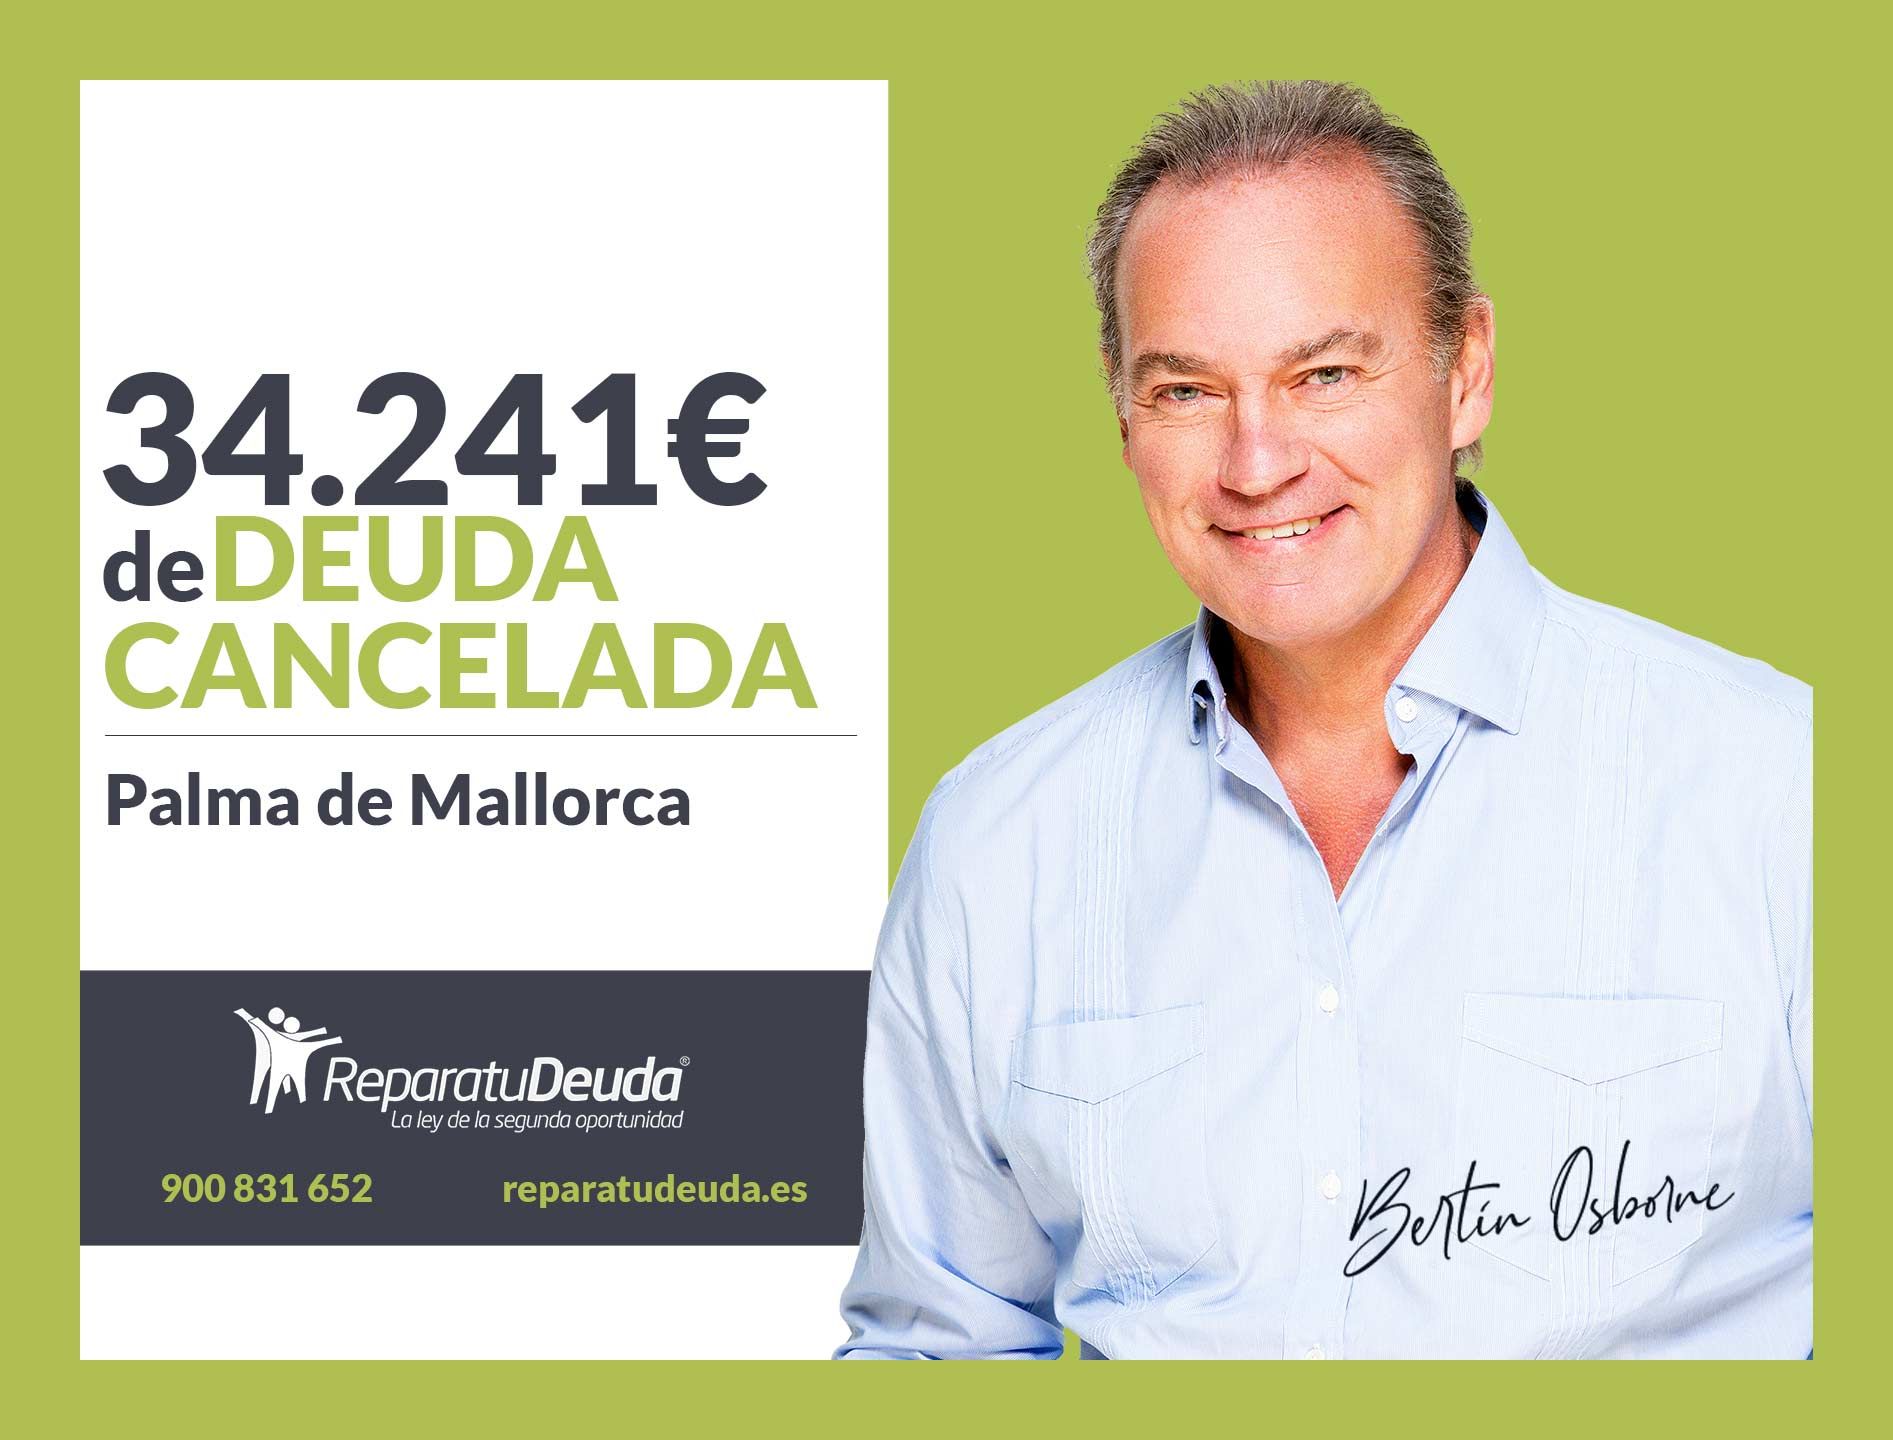 Repara tu Deuda Abogados cancela 34.241? en Palma de Mallorca (Baleares) con la Ley de Segunda Oportunidad